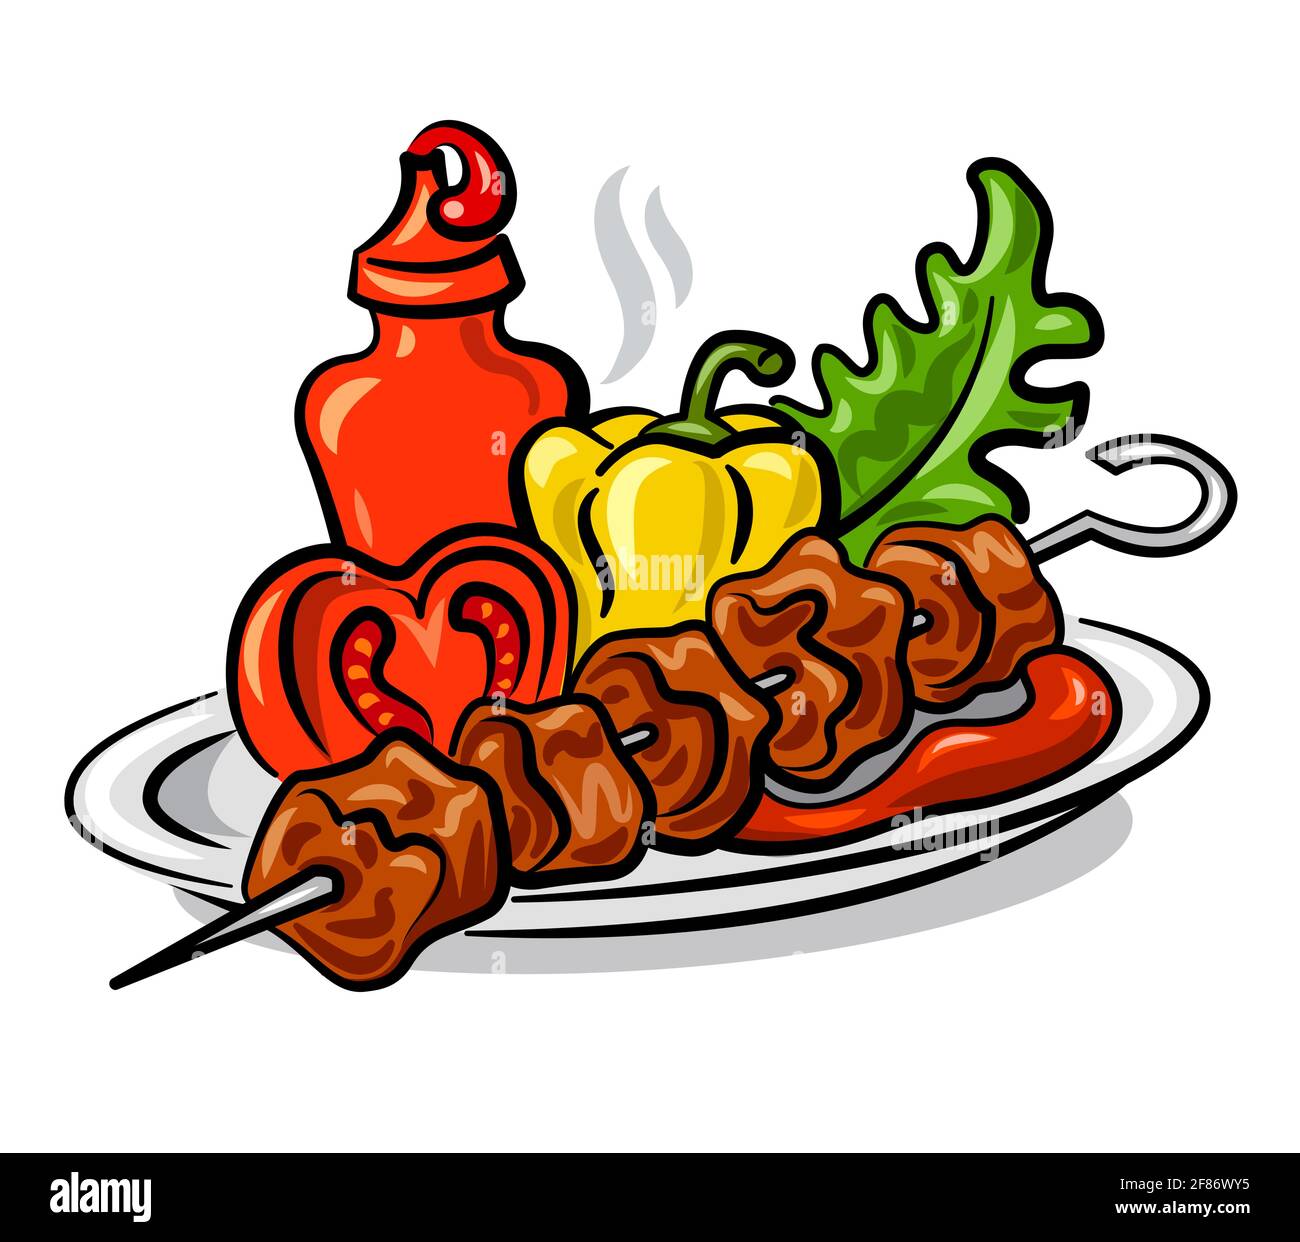 illustrazione del kebab caldo alla griglia con ketchup di pomodoro, verdure e insalata Illustrazione Vettoriale